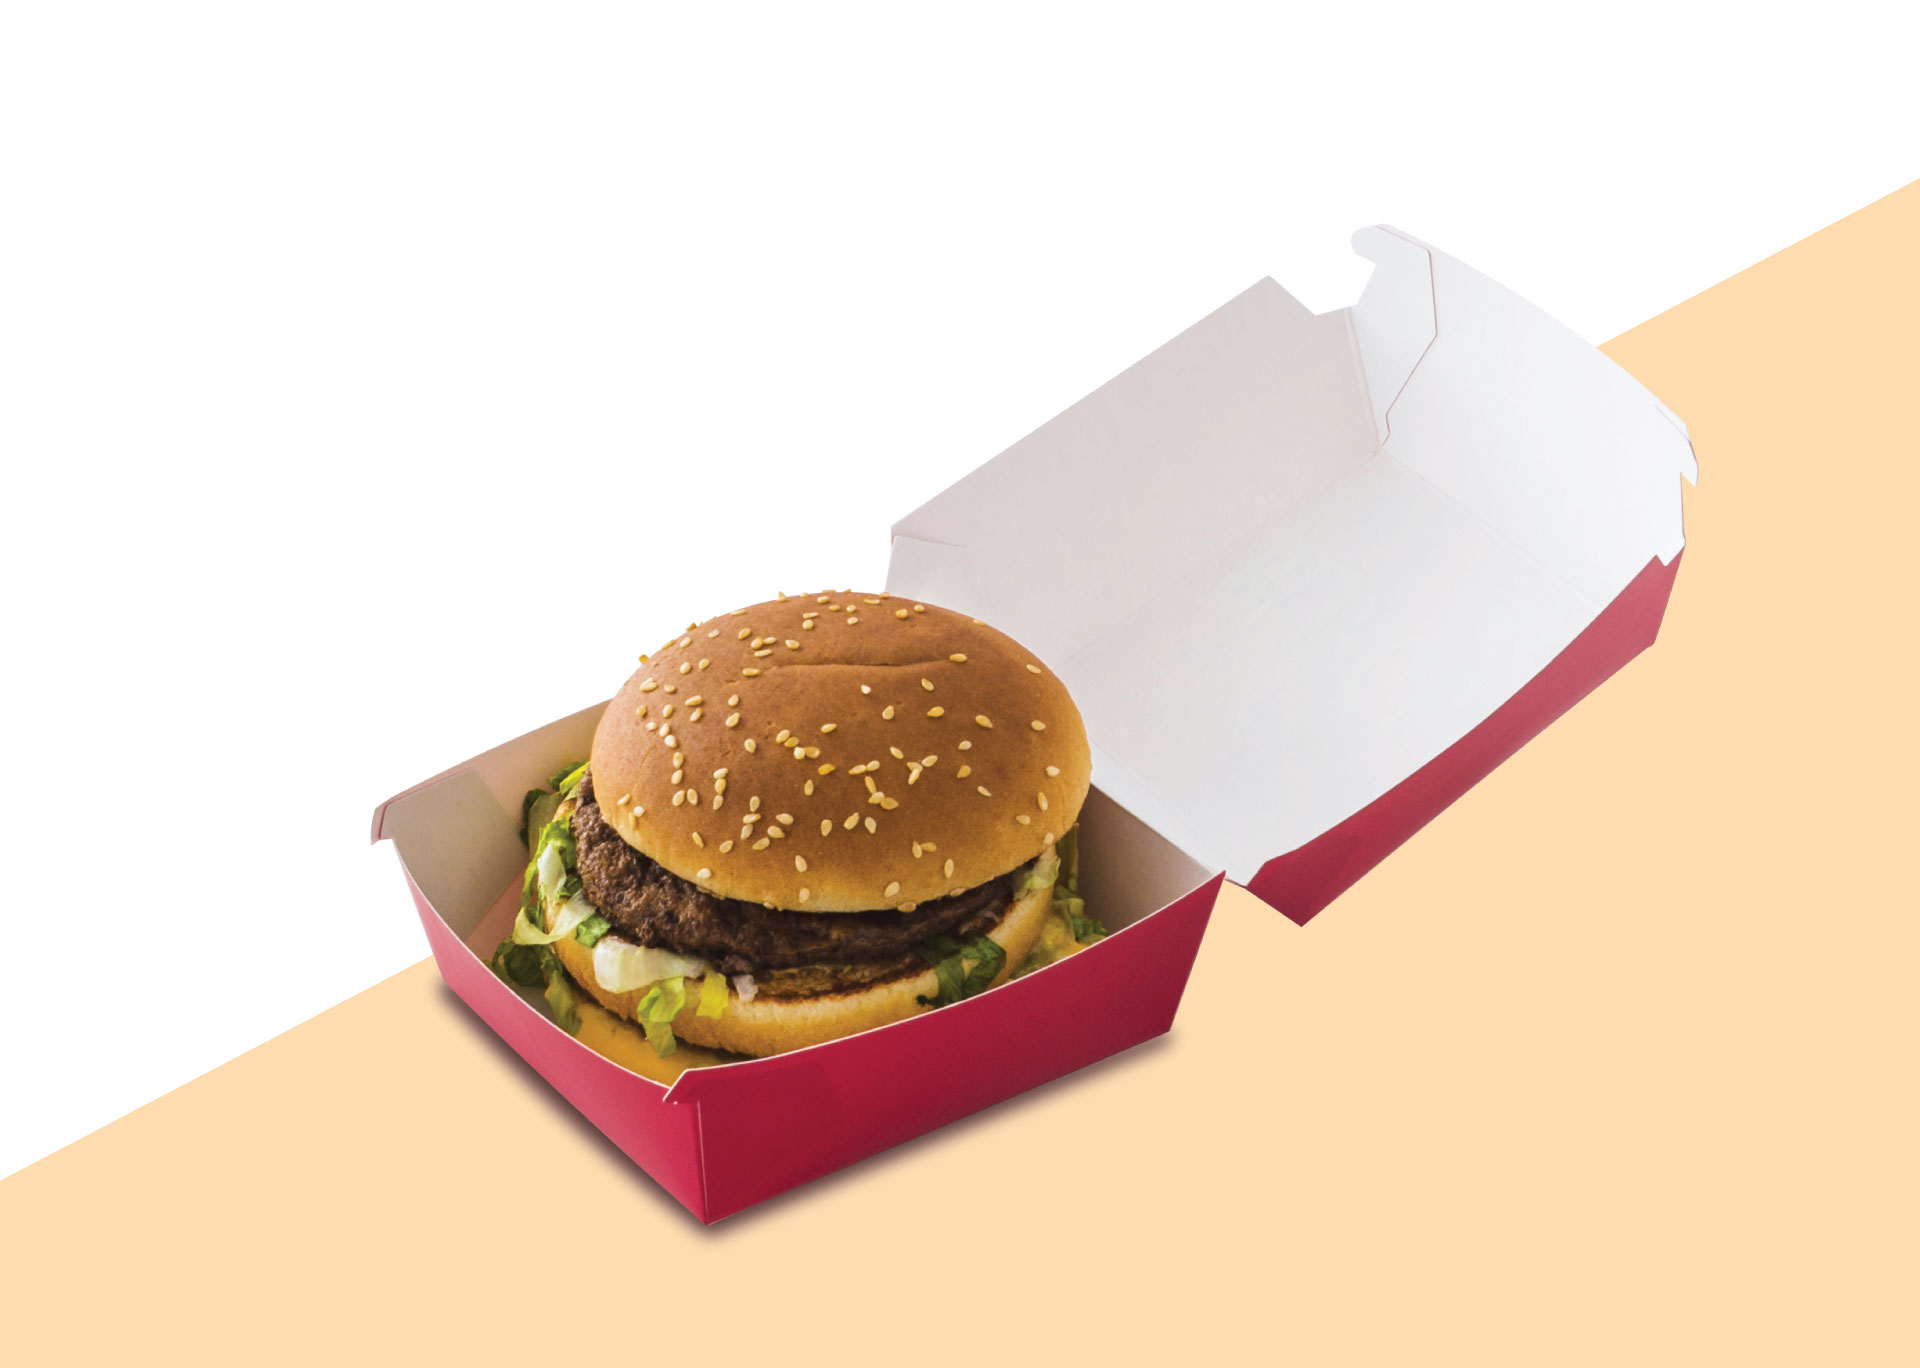 جعبه همبرگر با طراحی های مختلف